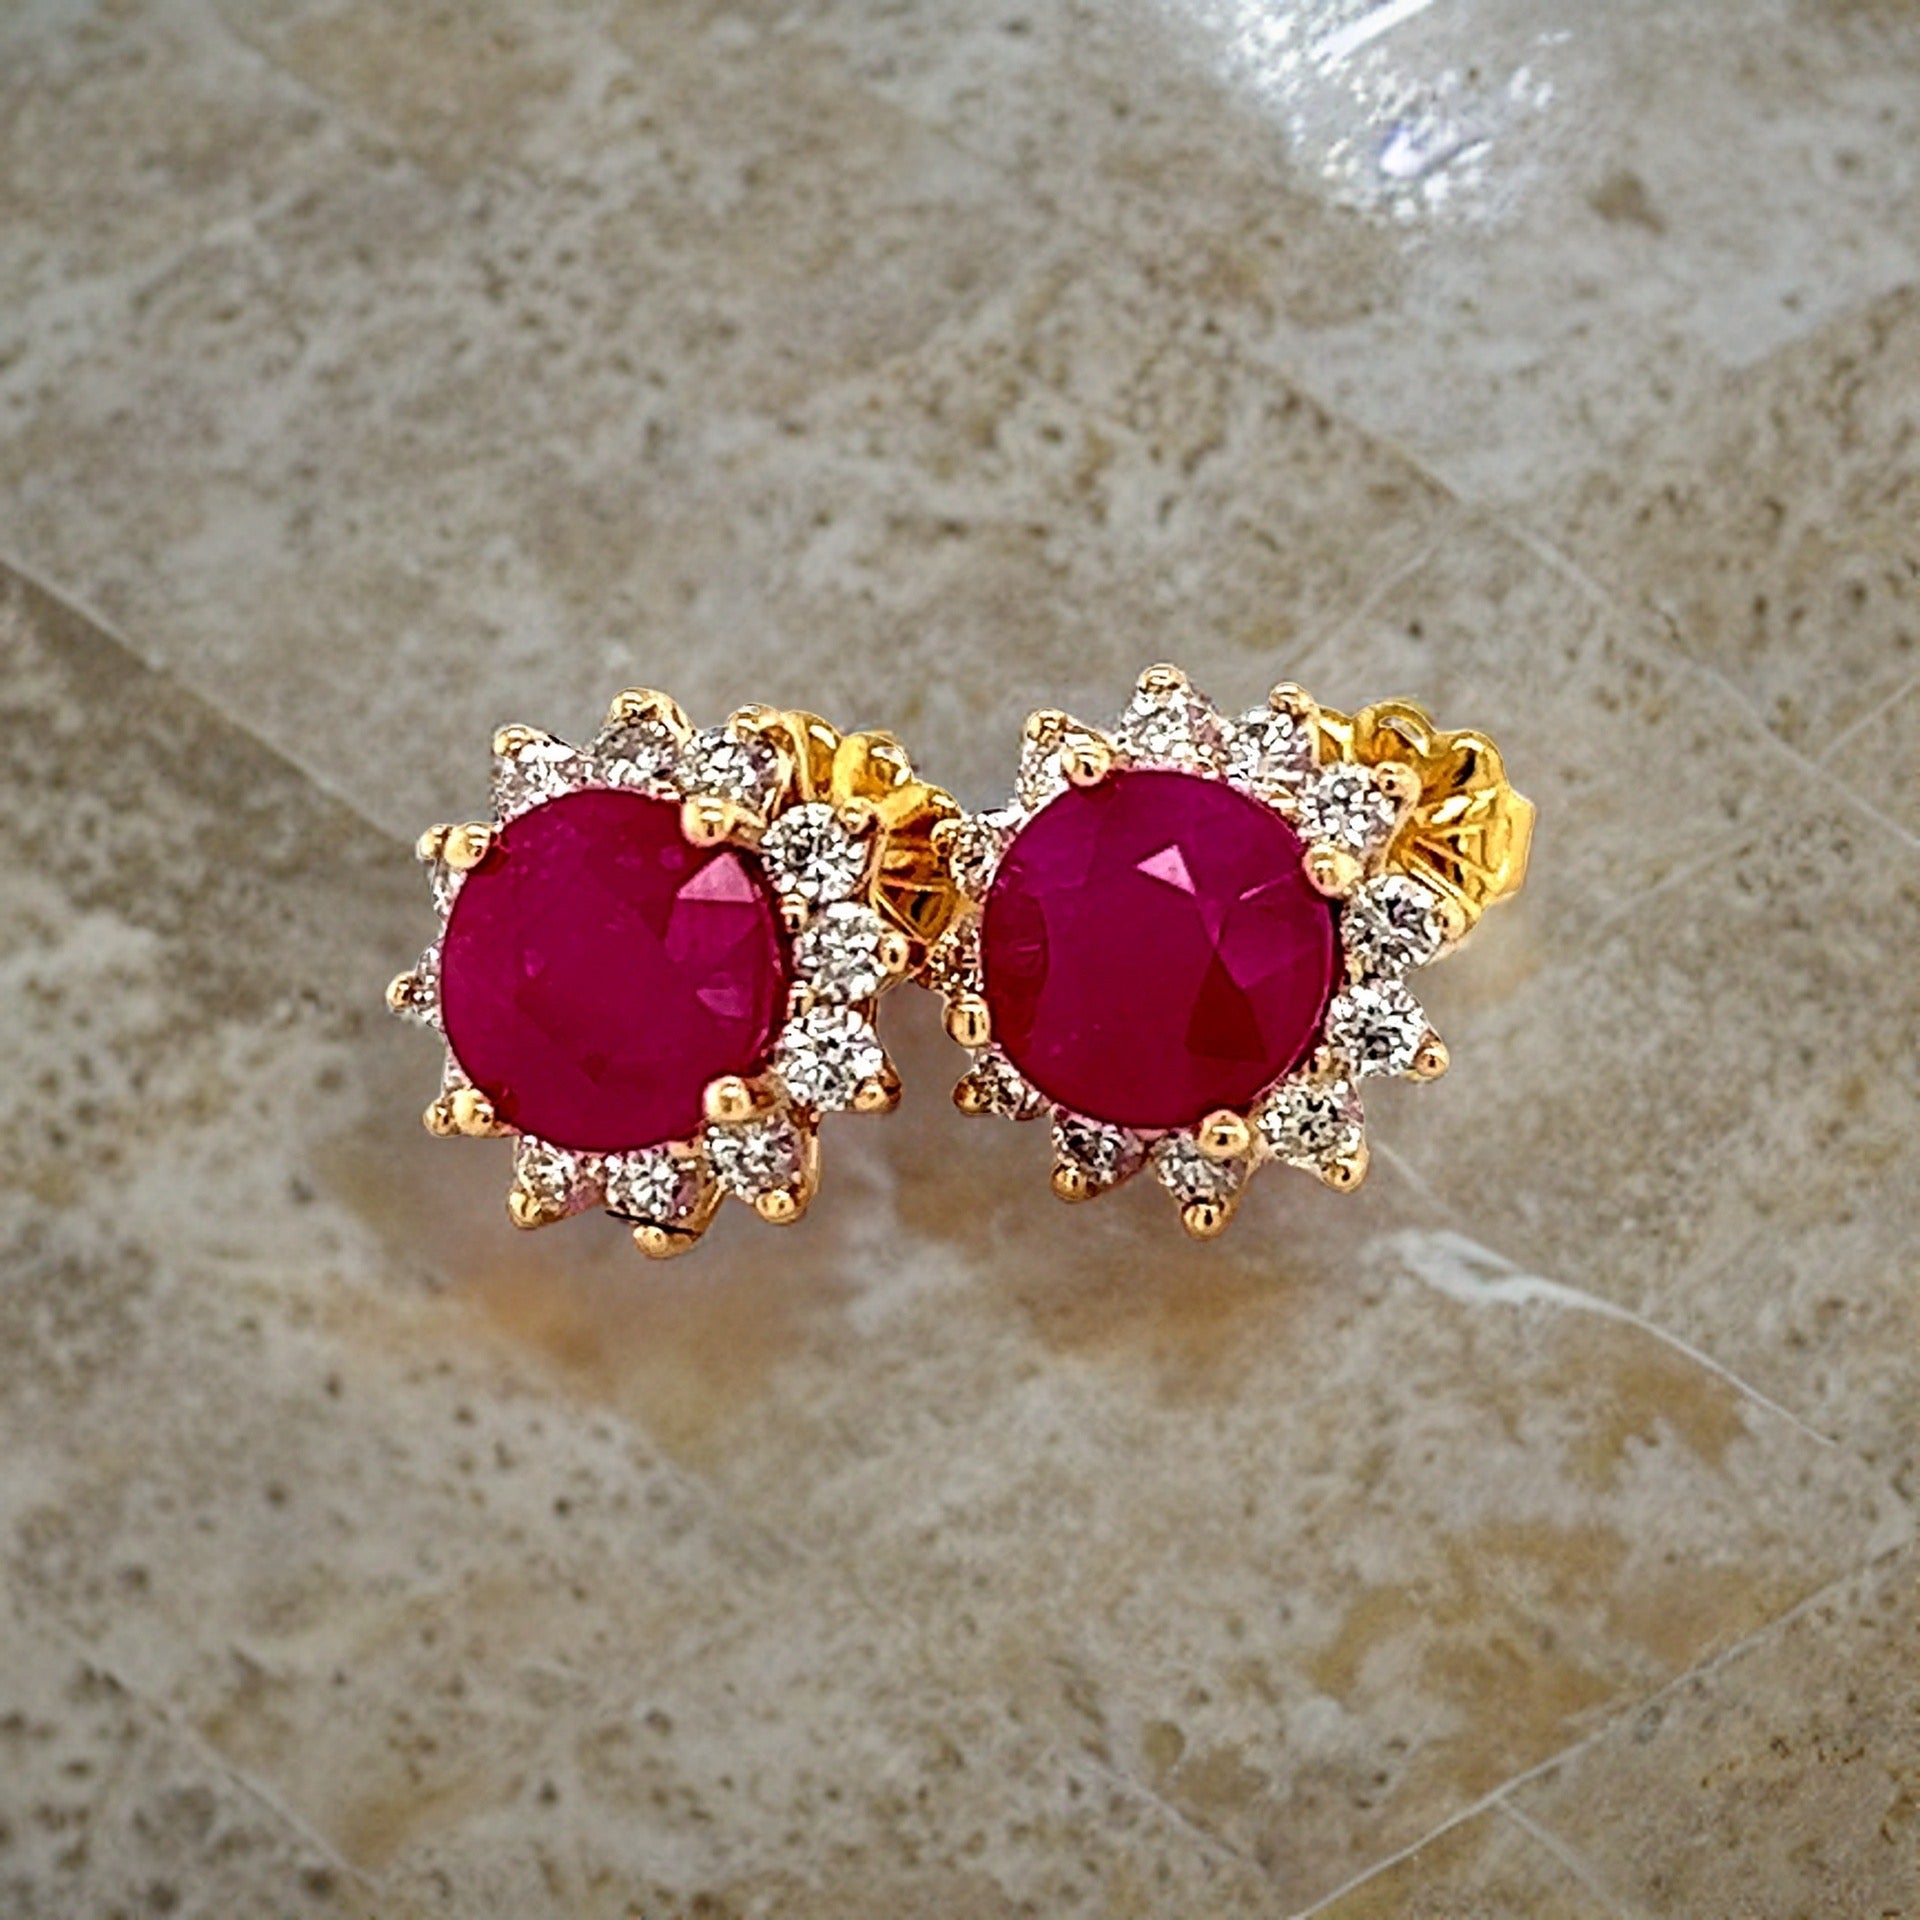 Natural Ruby Diamond Earrings 14k Gold 3.72 TCW Certified $5,950 211346 - Certified Fine Jewelry